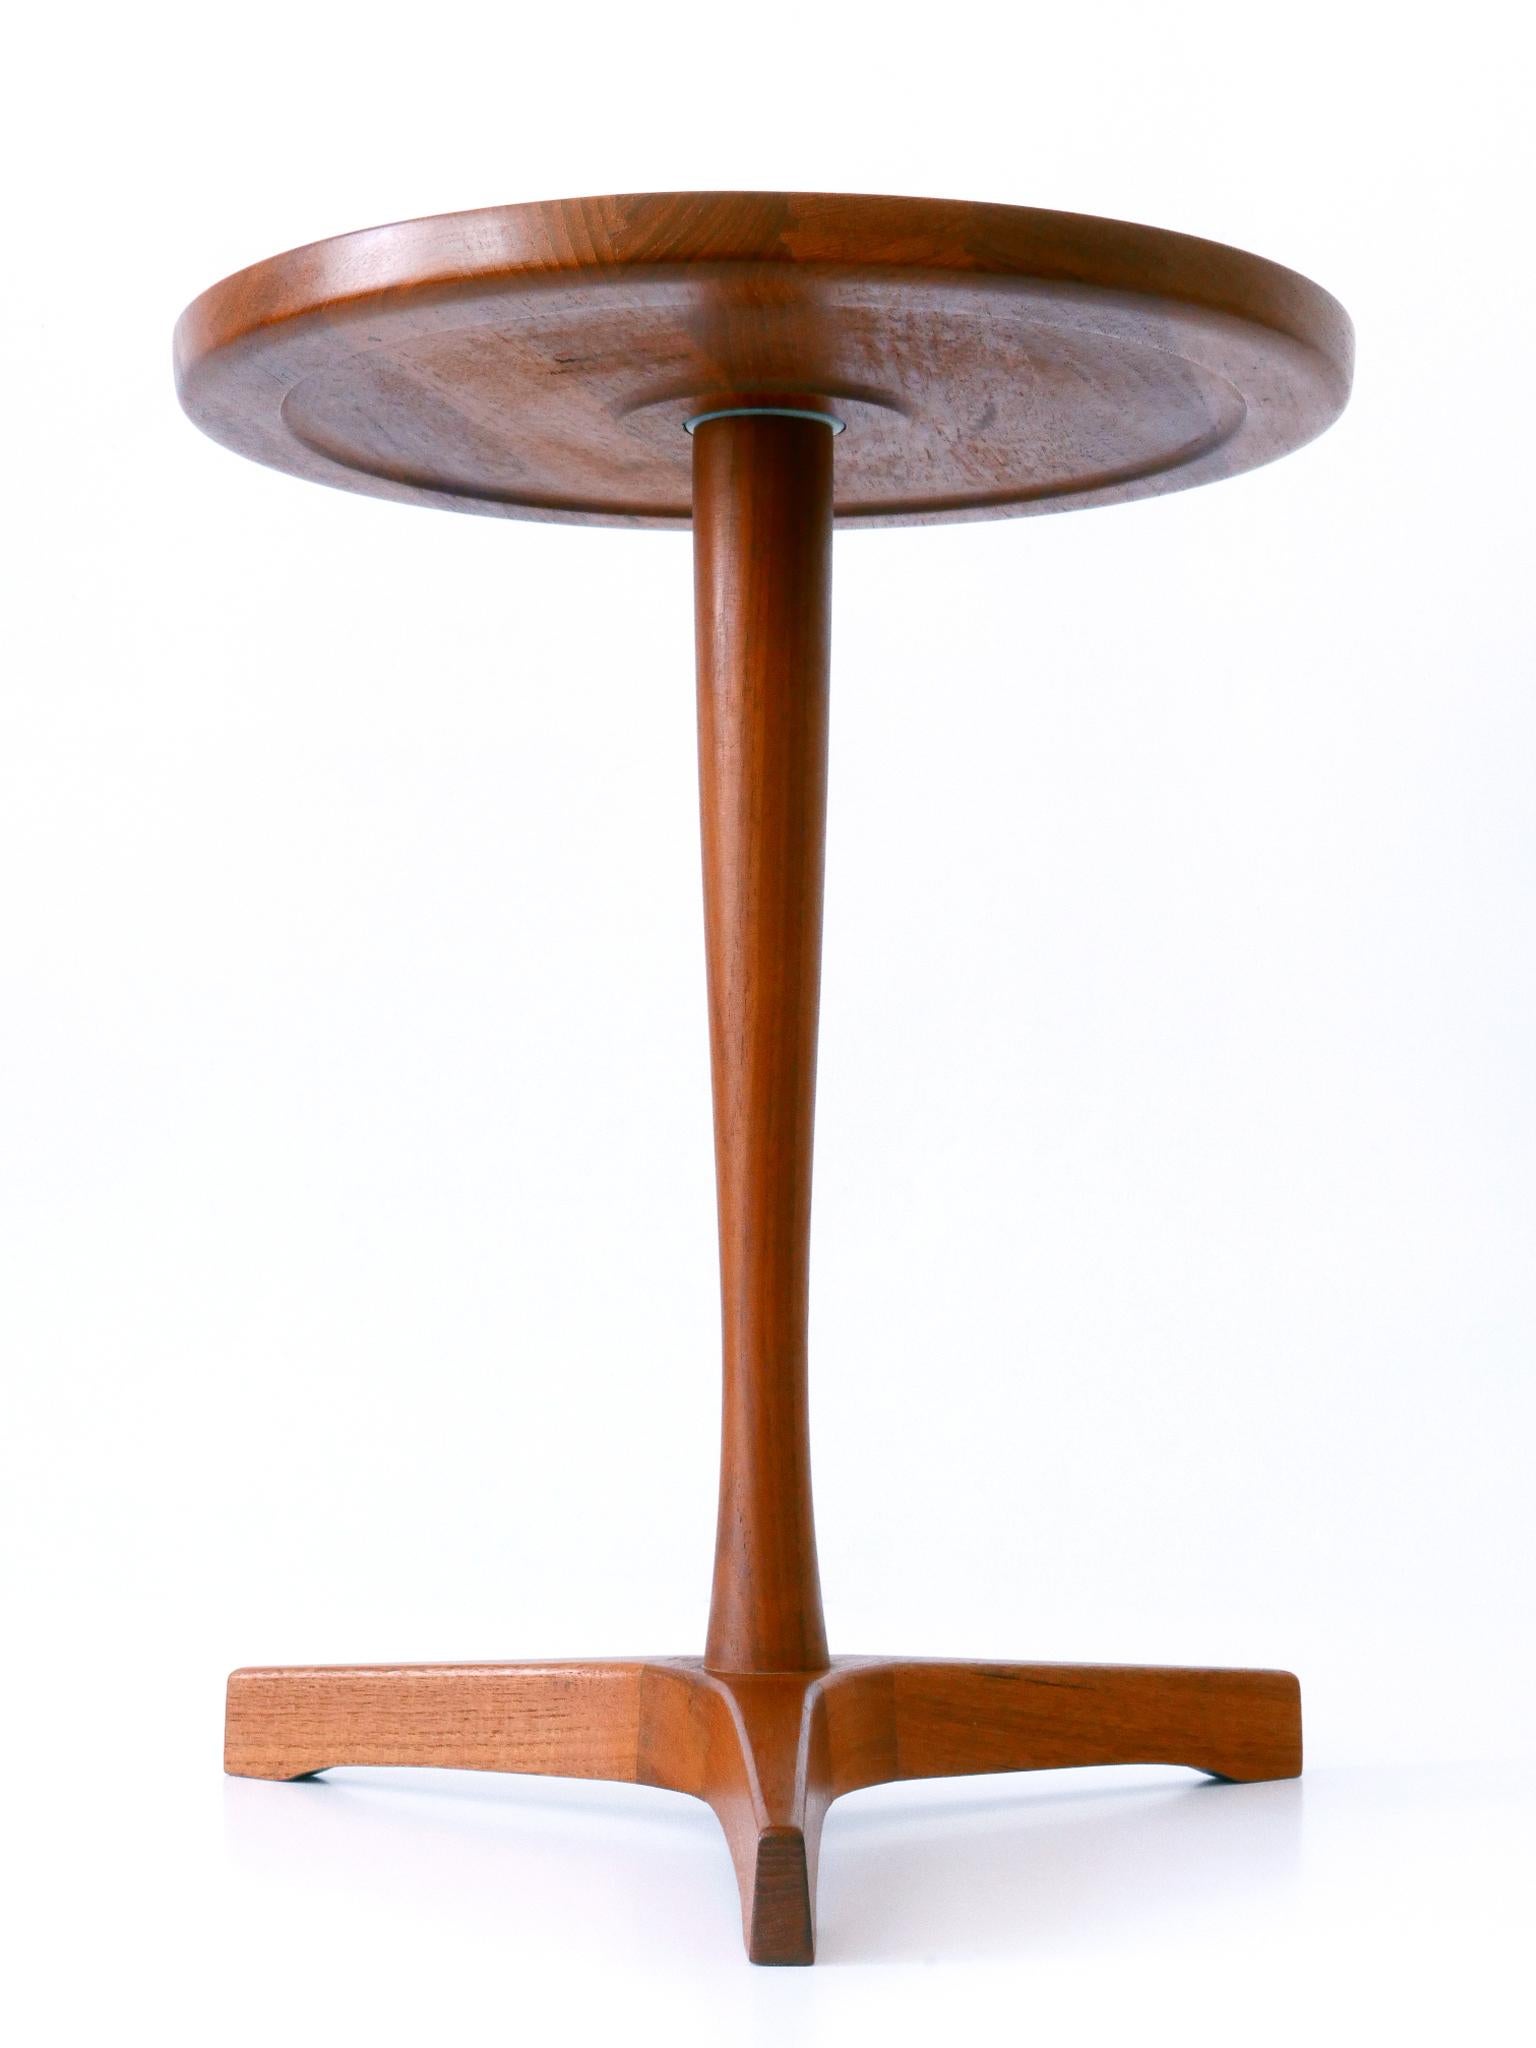 Mid-20th Century Elegant Mid-Century Modern Teak Side Table by Hans C. Andersen for Artek 1960s For Sale